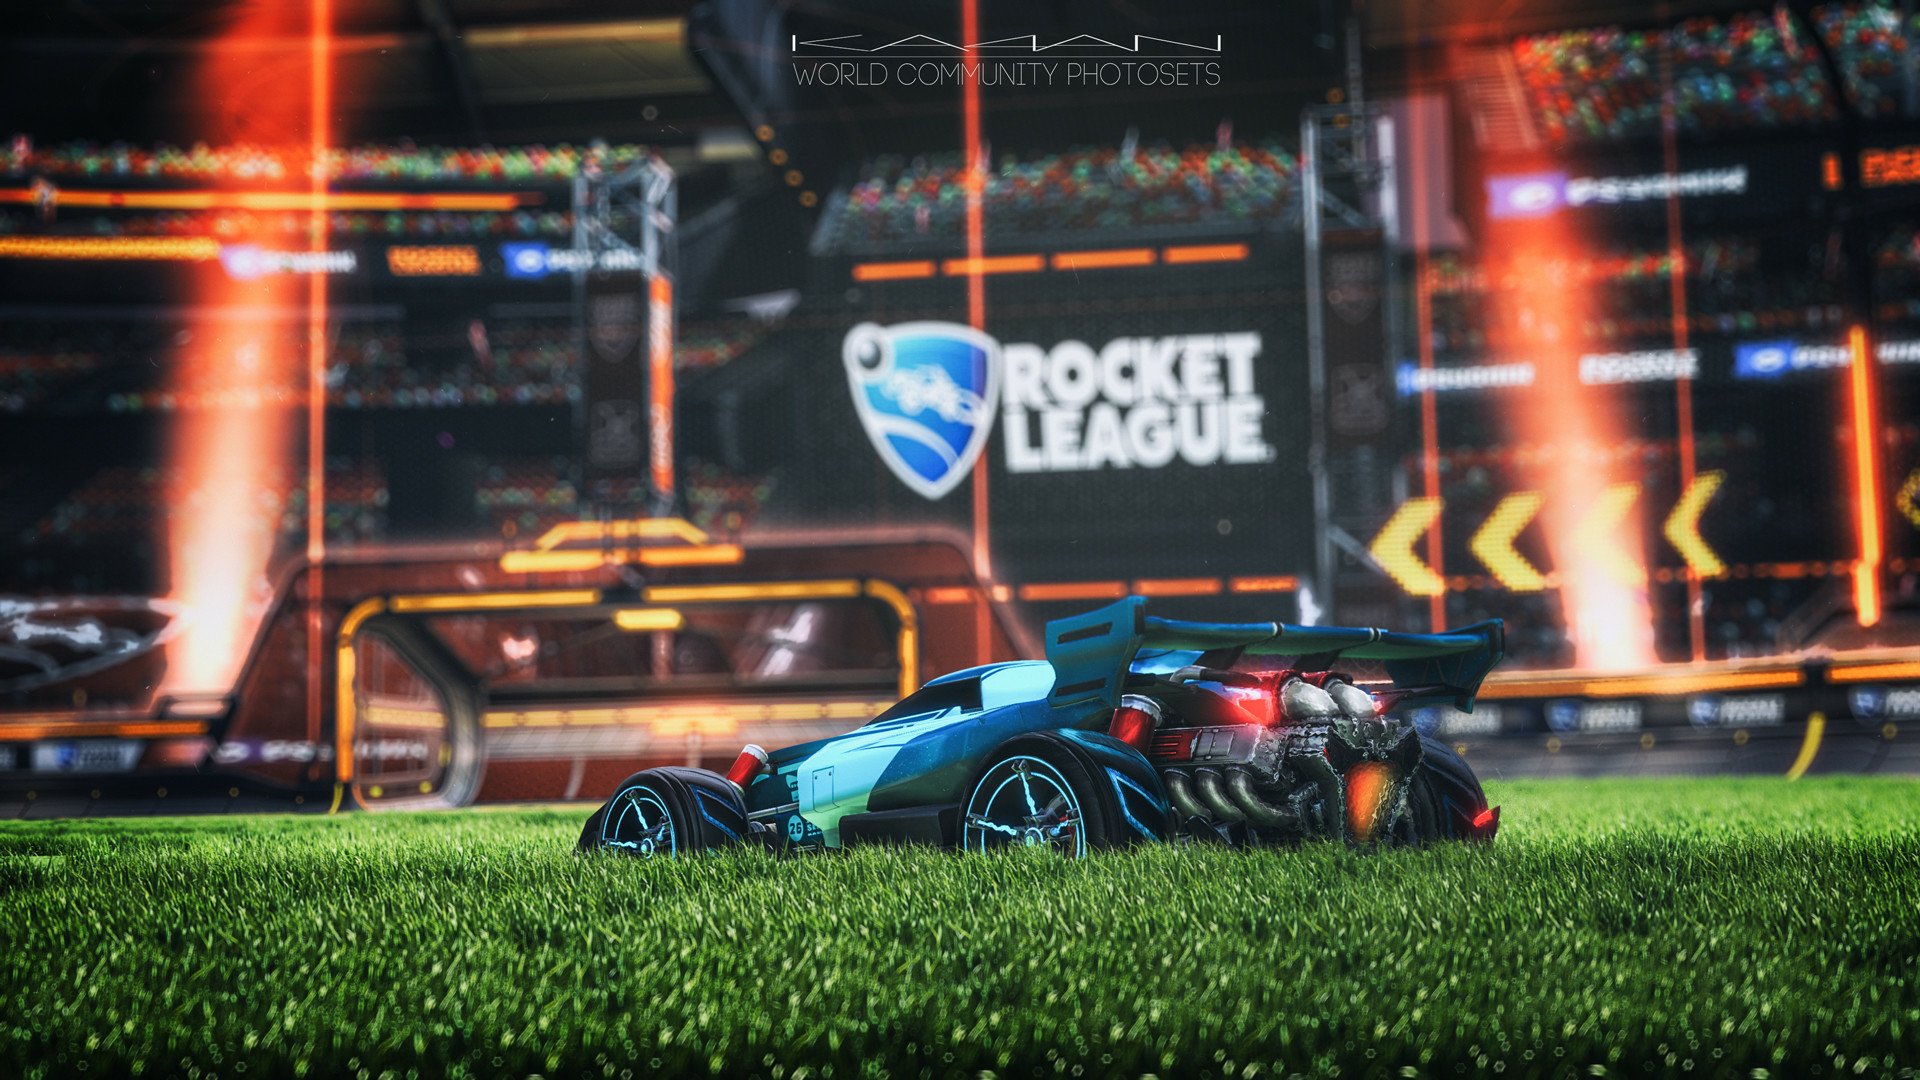 rocket league mobile background